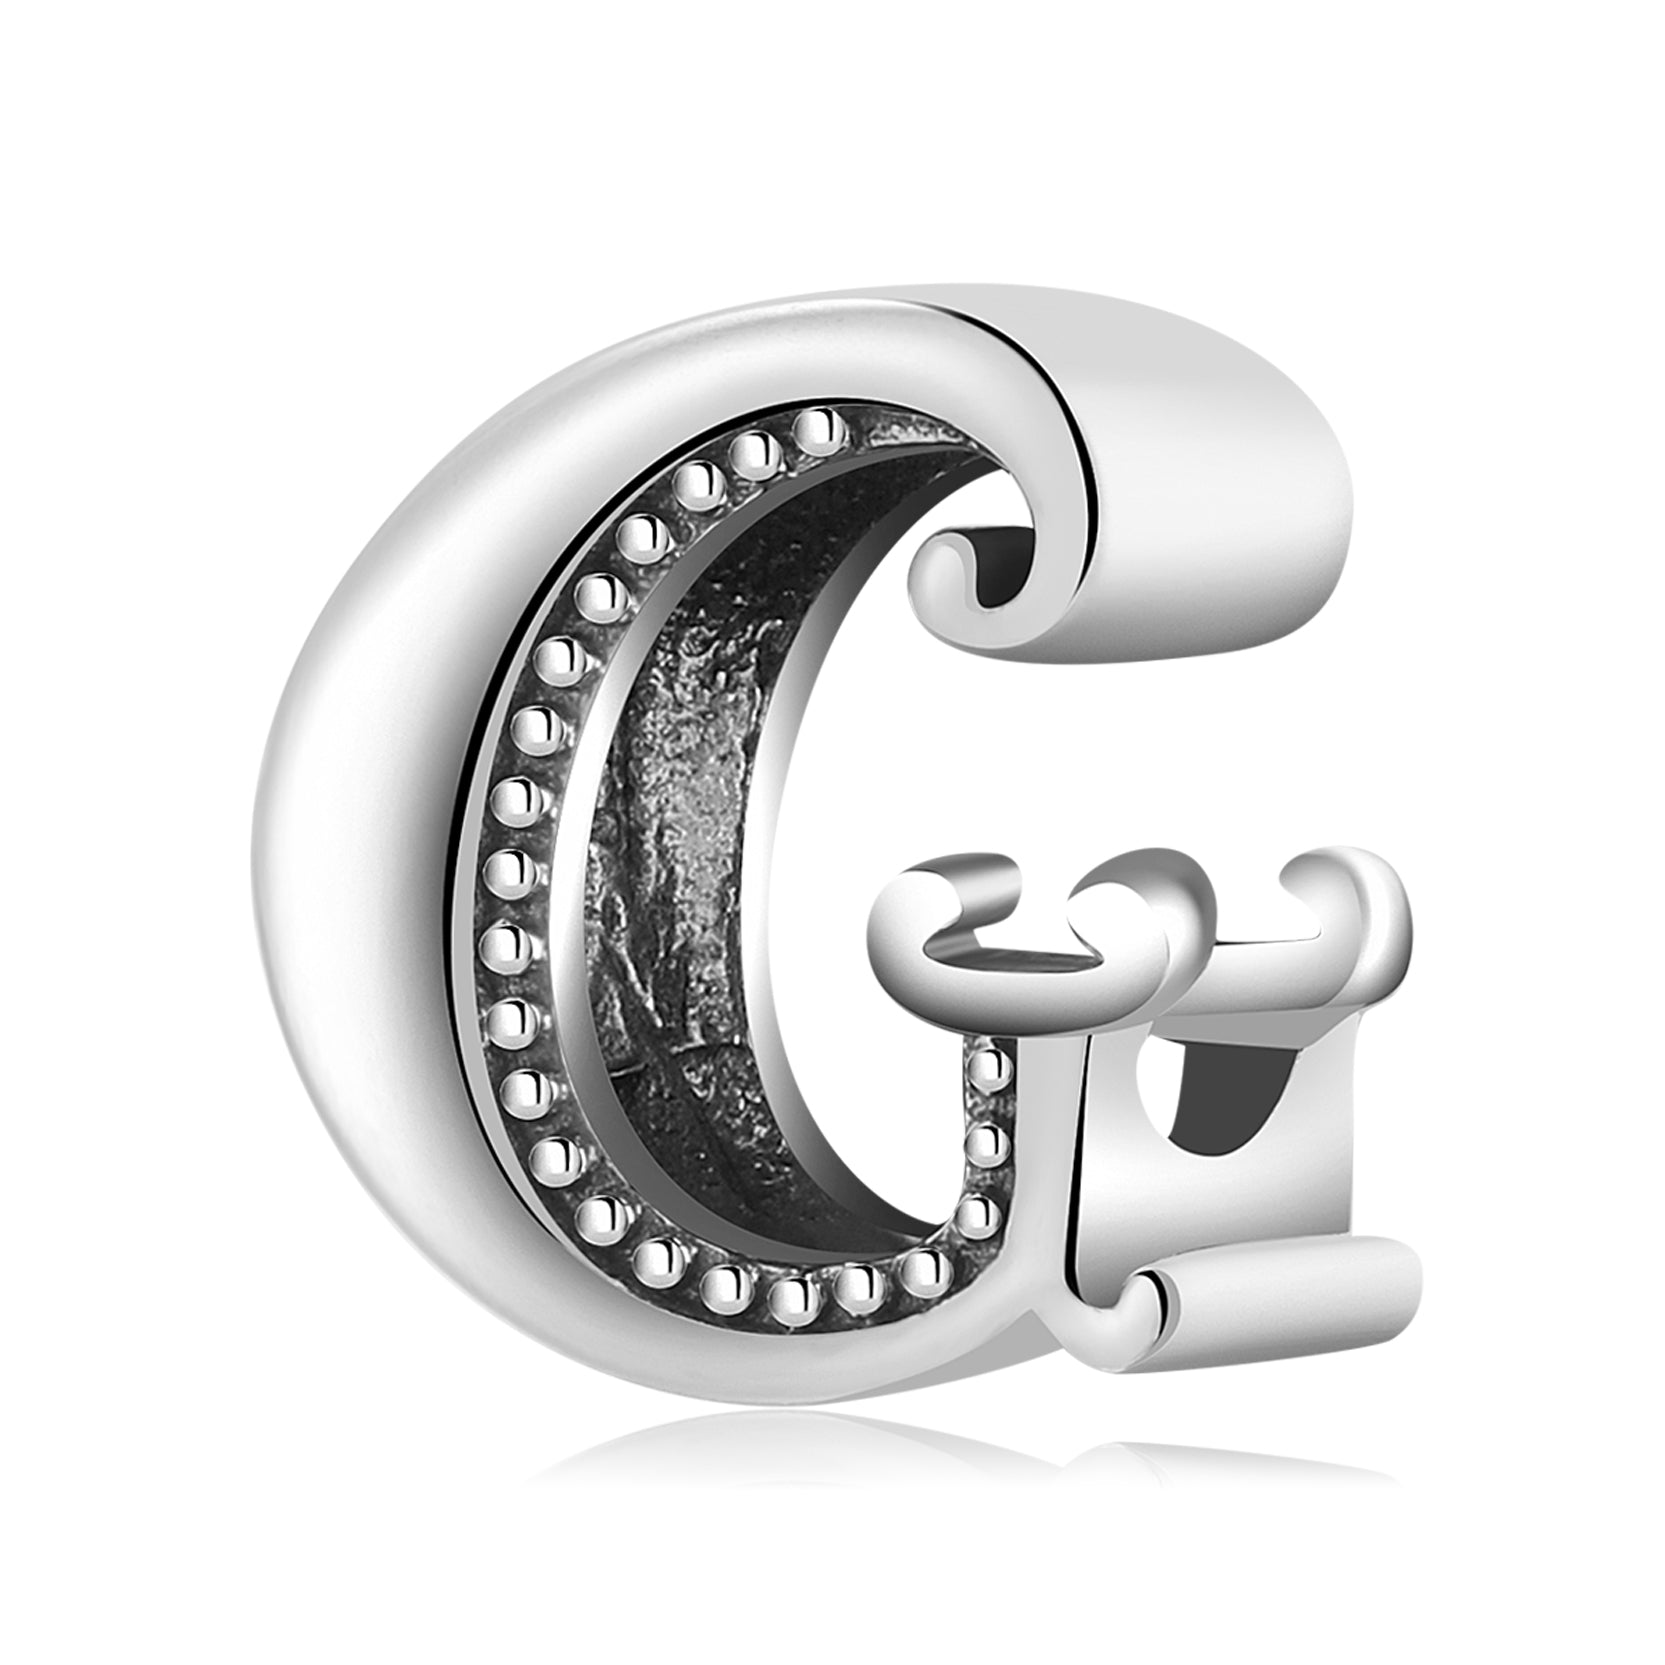 Letter "G" - pendant for names